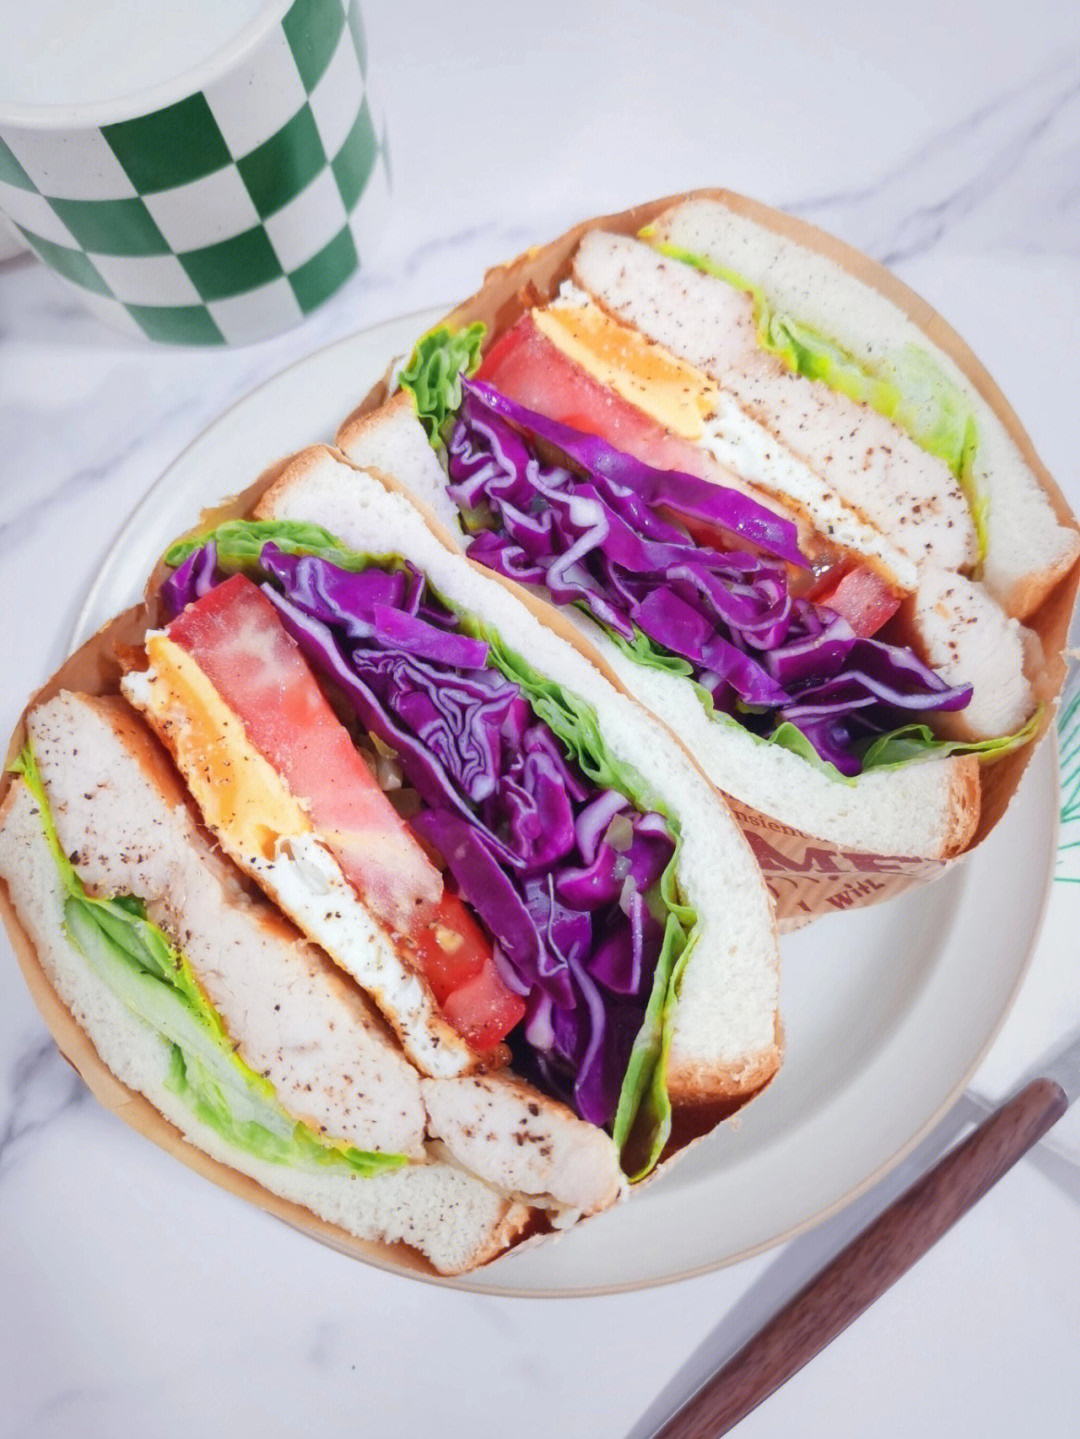 叠紫菜三明治图片